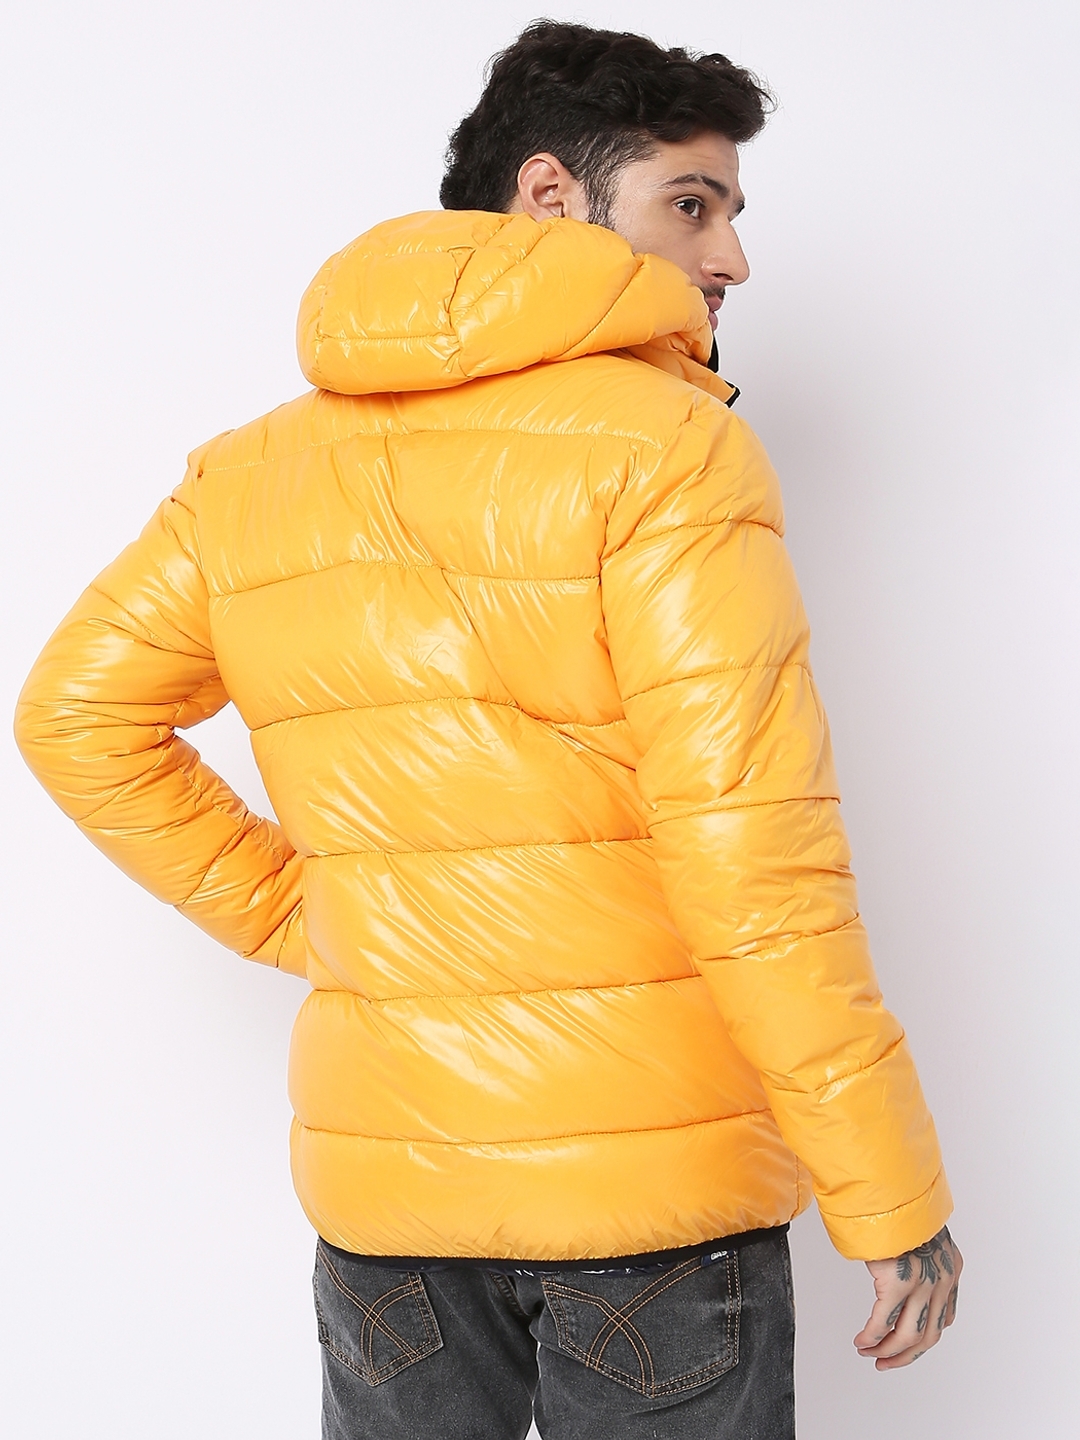 Regular Fit Lightweight puffer jacket - Dark yellow - Men | H&M